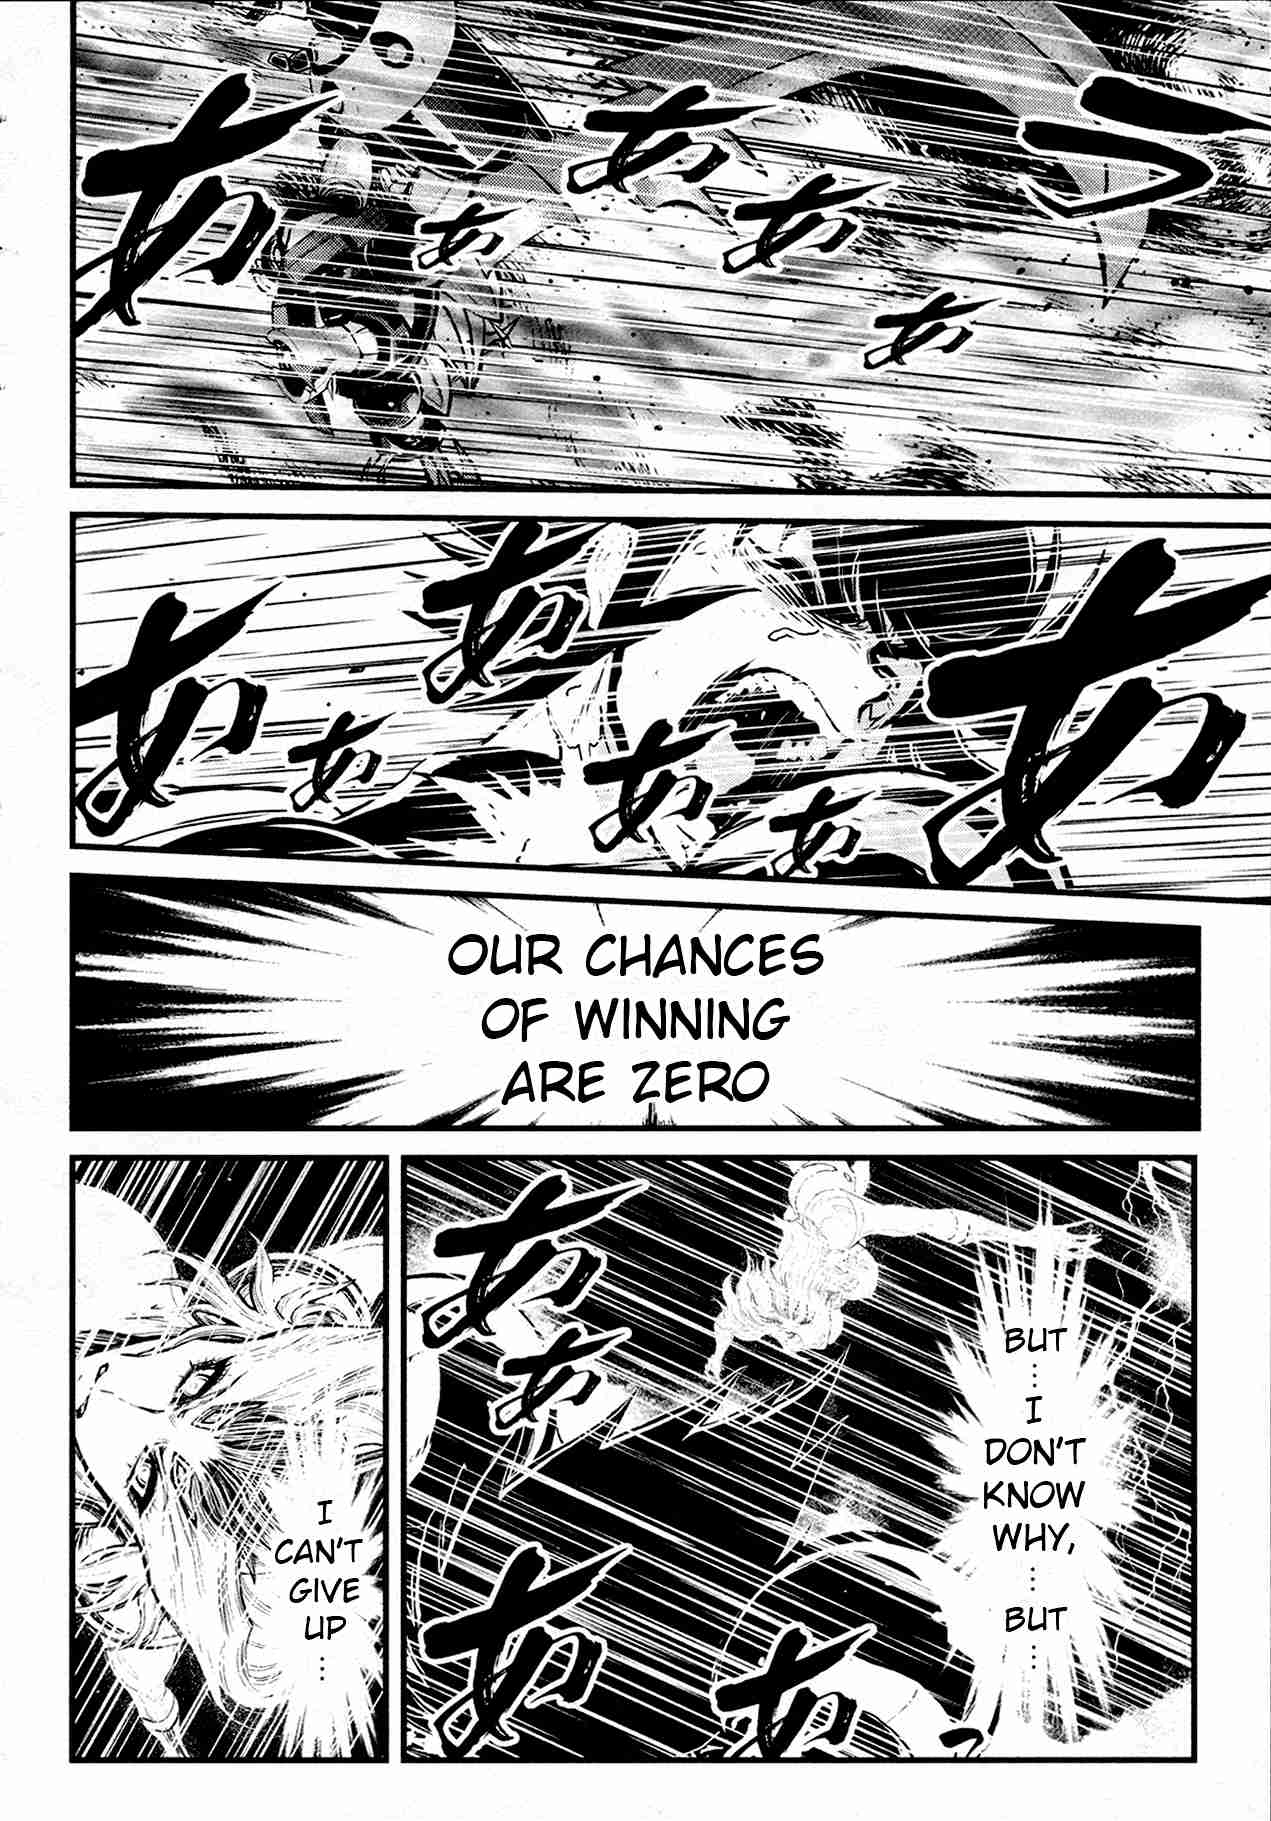 Shin Mazinger Zero Vol. 8 Ch. 37 Pure White Wings Beat on the Battlefield!!!